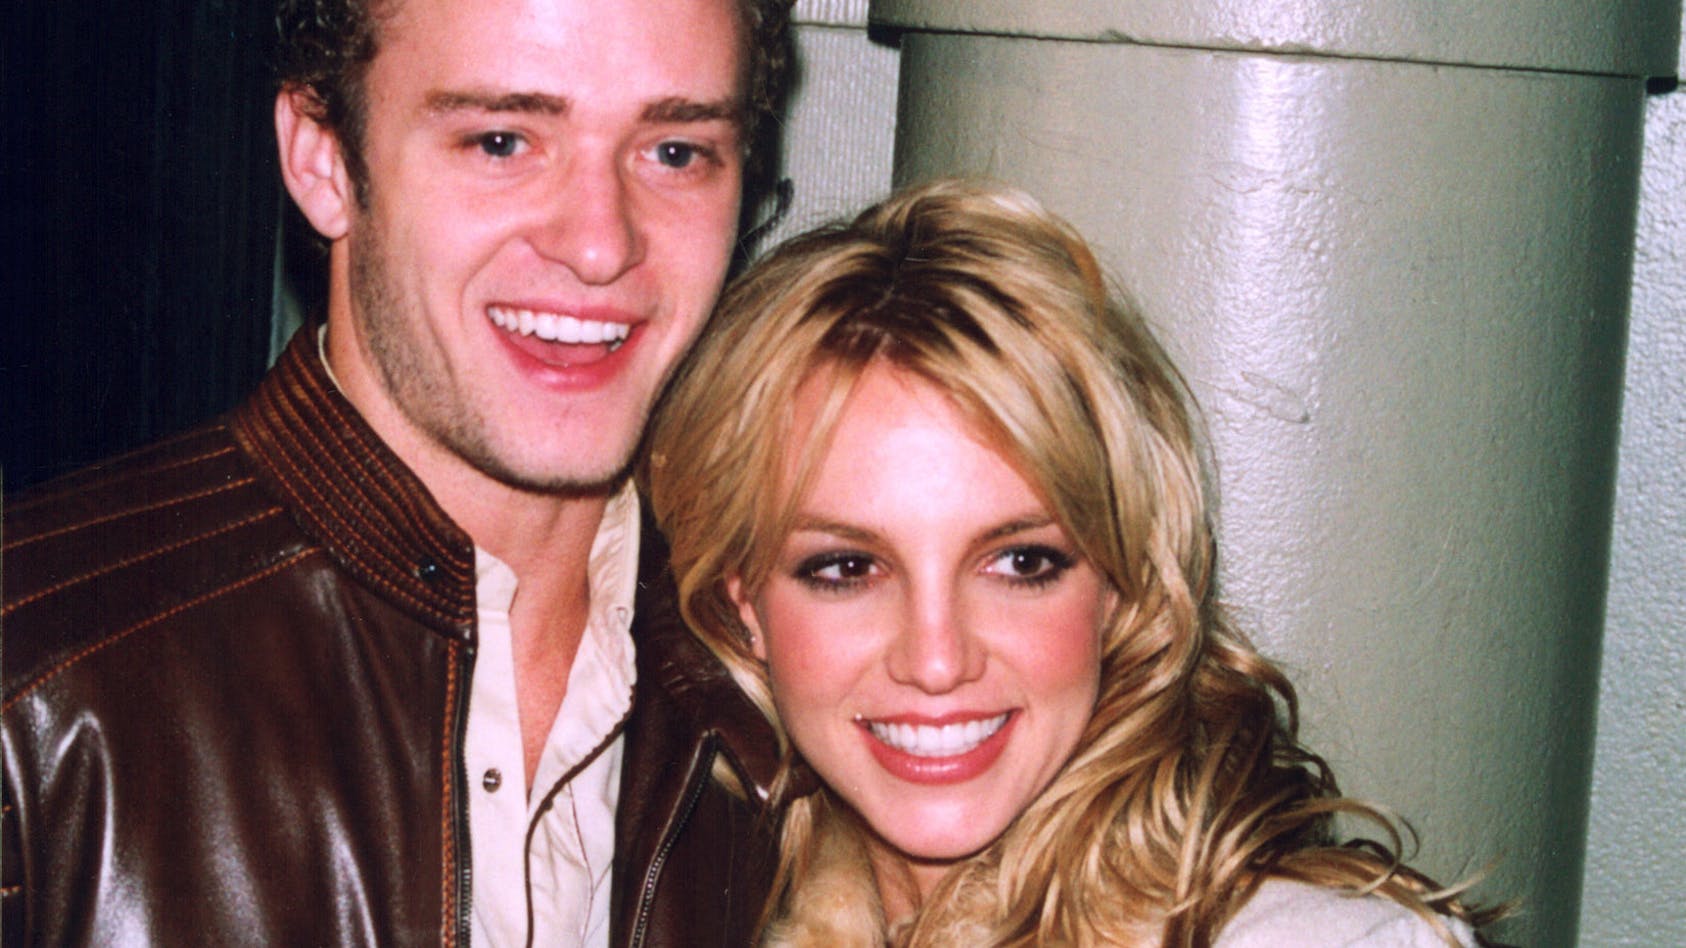 Britney Spears' første offentlige romance var med ingen anden end boybandikonet Justin Timberlake. Hun og 'N Syncs krøltop var PARRET fra 1999 til 2002, hvor forholdet til sidst brød ud i lys lue og blandt andet gav os kæmpehittet ”Cry me a river”.